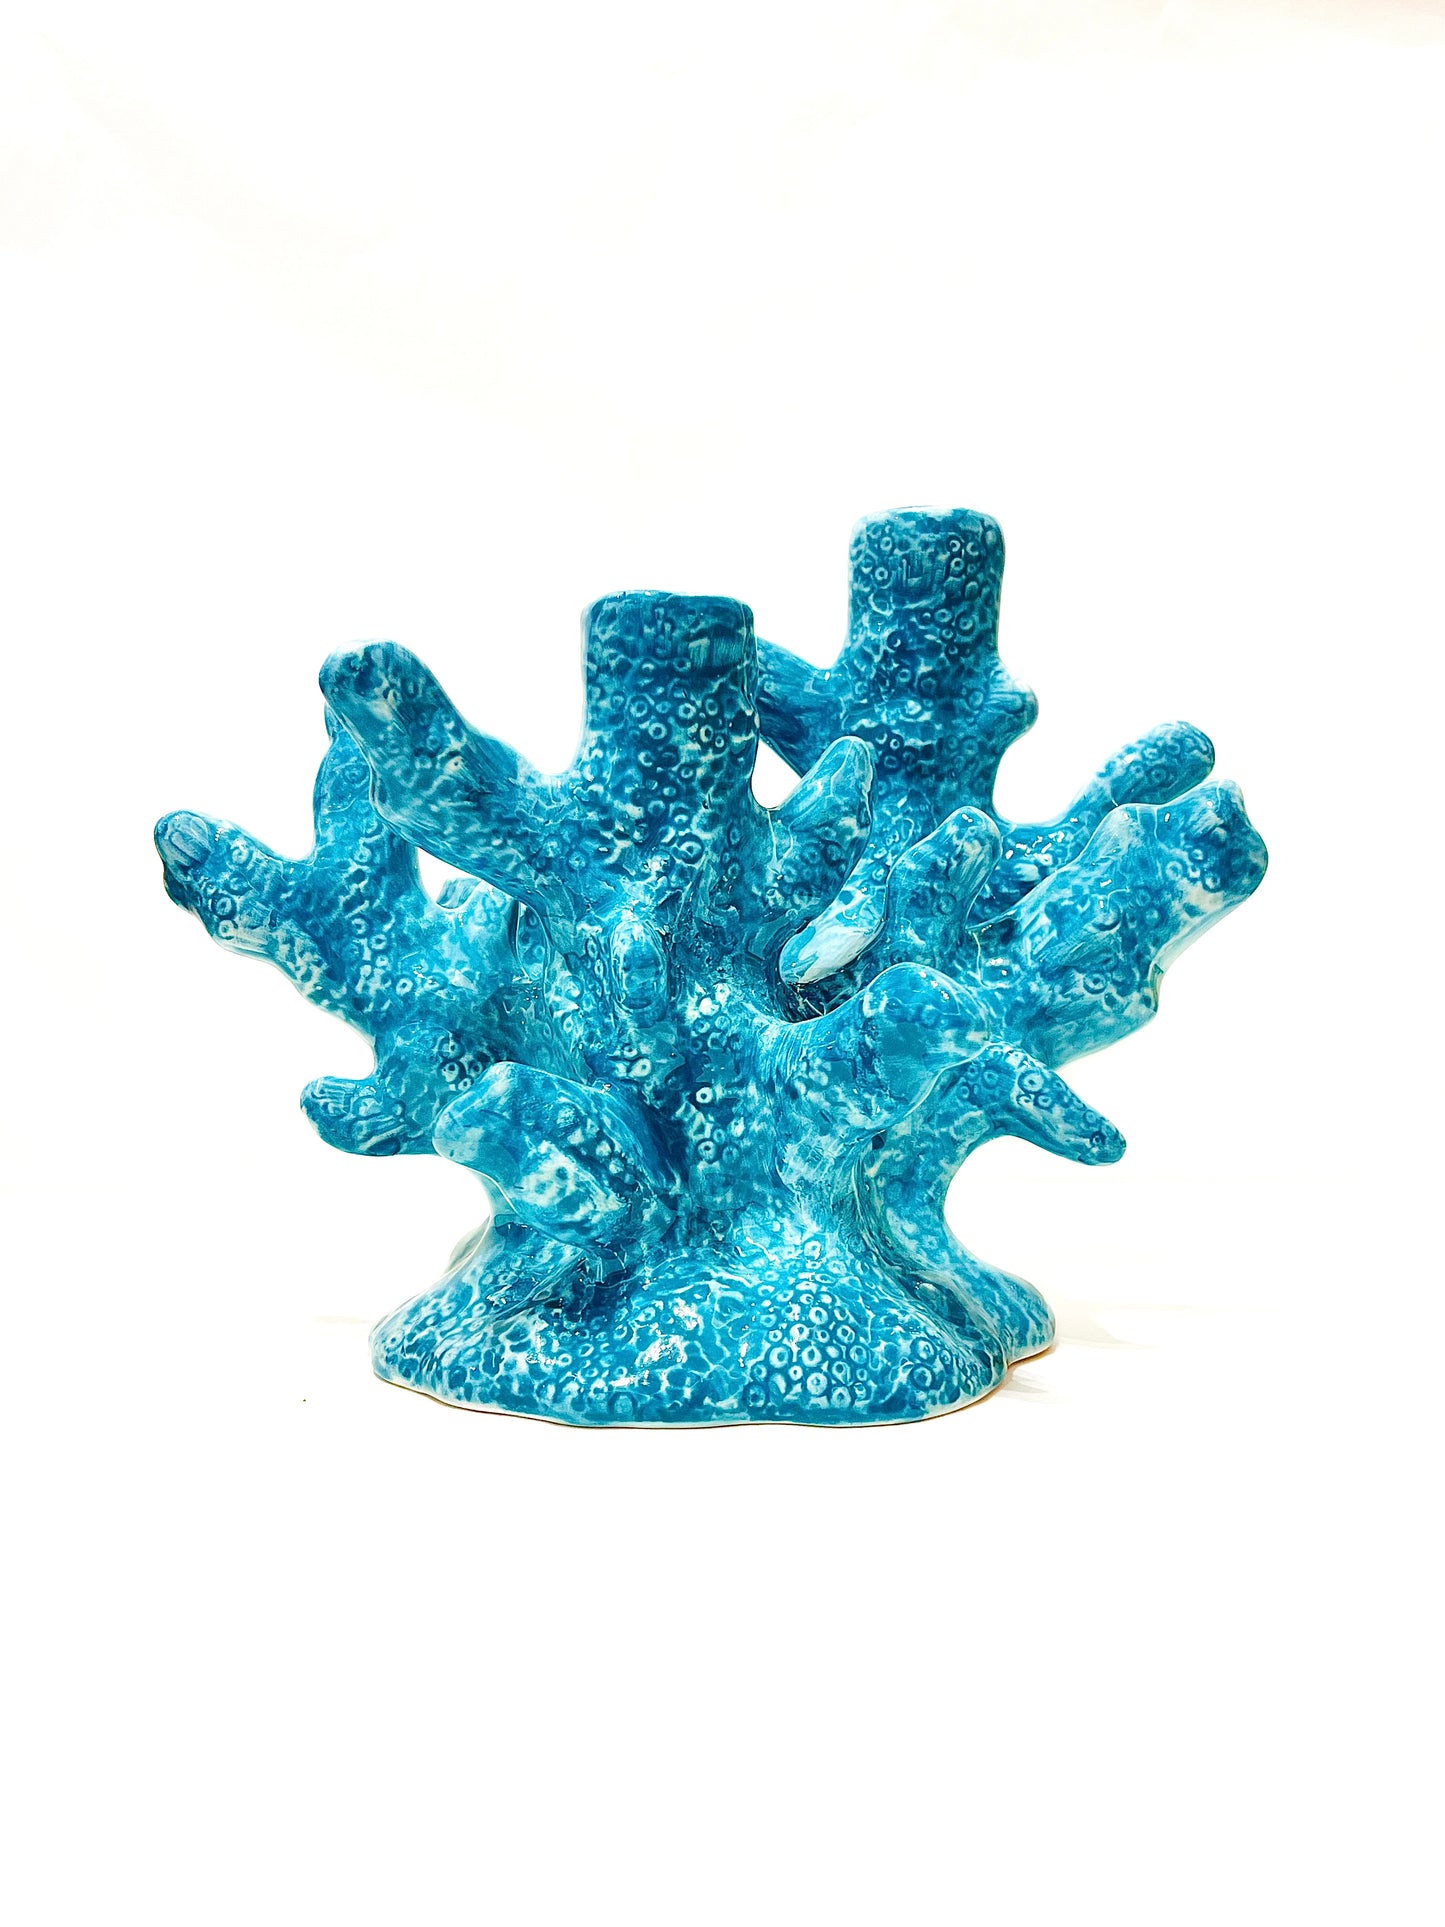 Candelabro Coral azul 3 Brazos